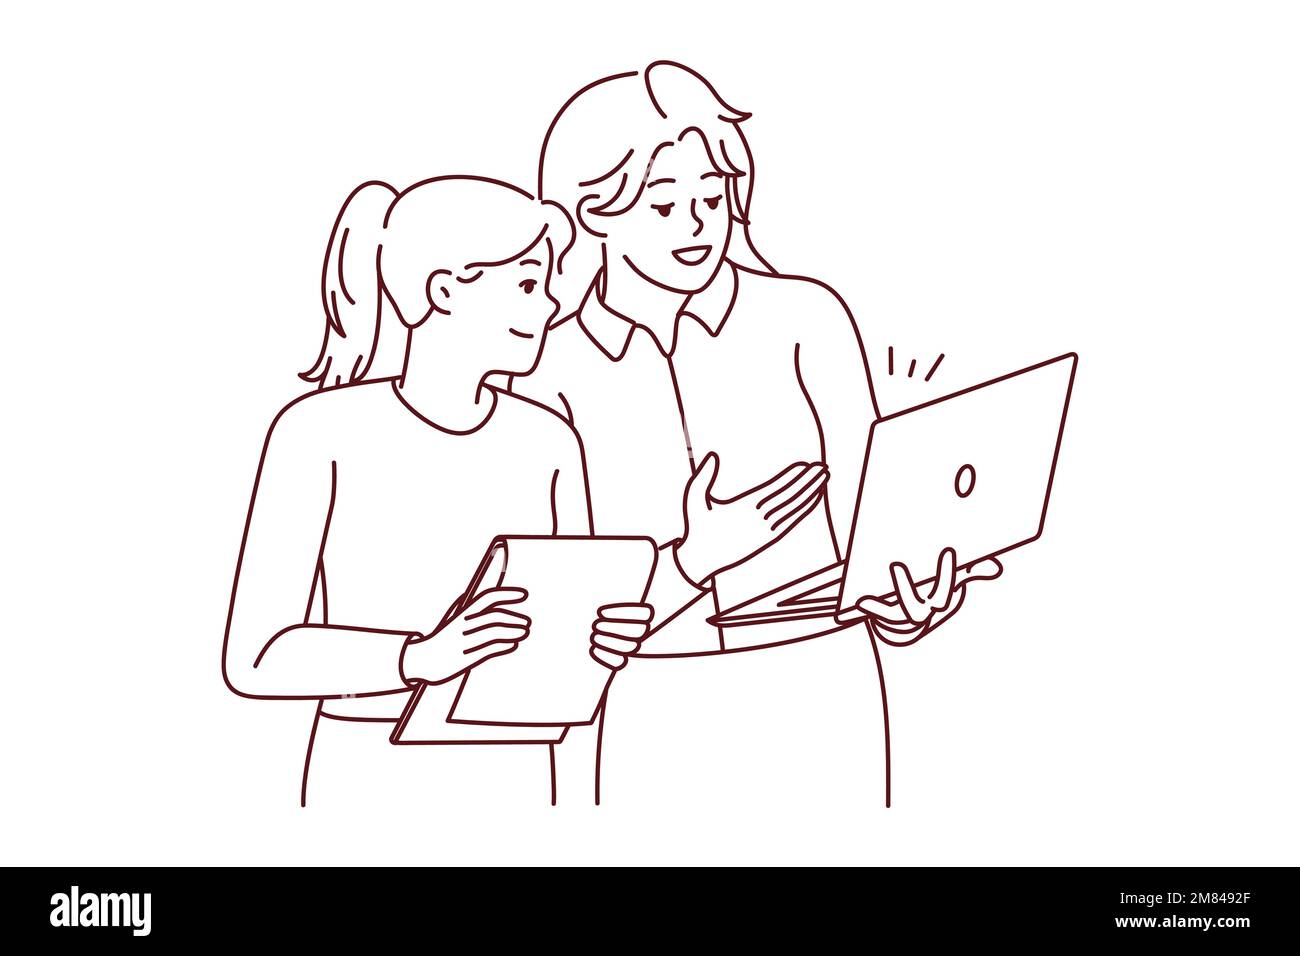 Les femmes d'affaires remue-méninges en utilisant un ordinateur portable Les femmes travaillent ensemble pour discuter d'idées commerciales sur ordinateur. Illustration vectorielle. Illustration de Vecteur